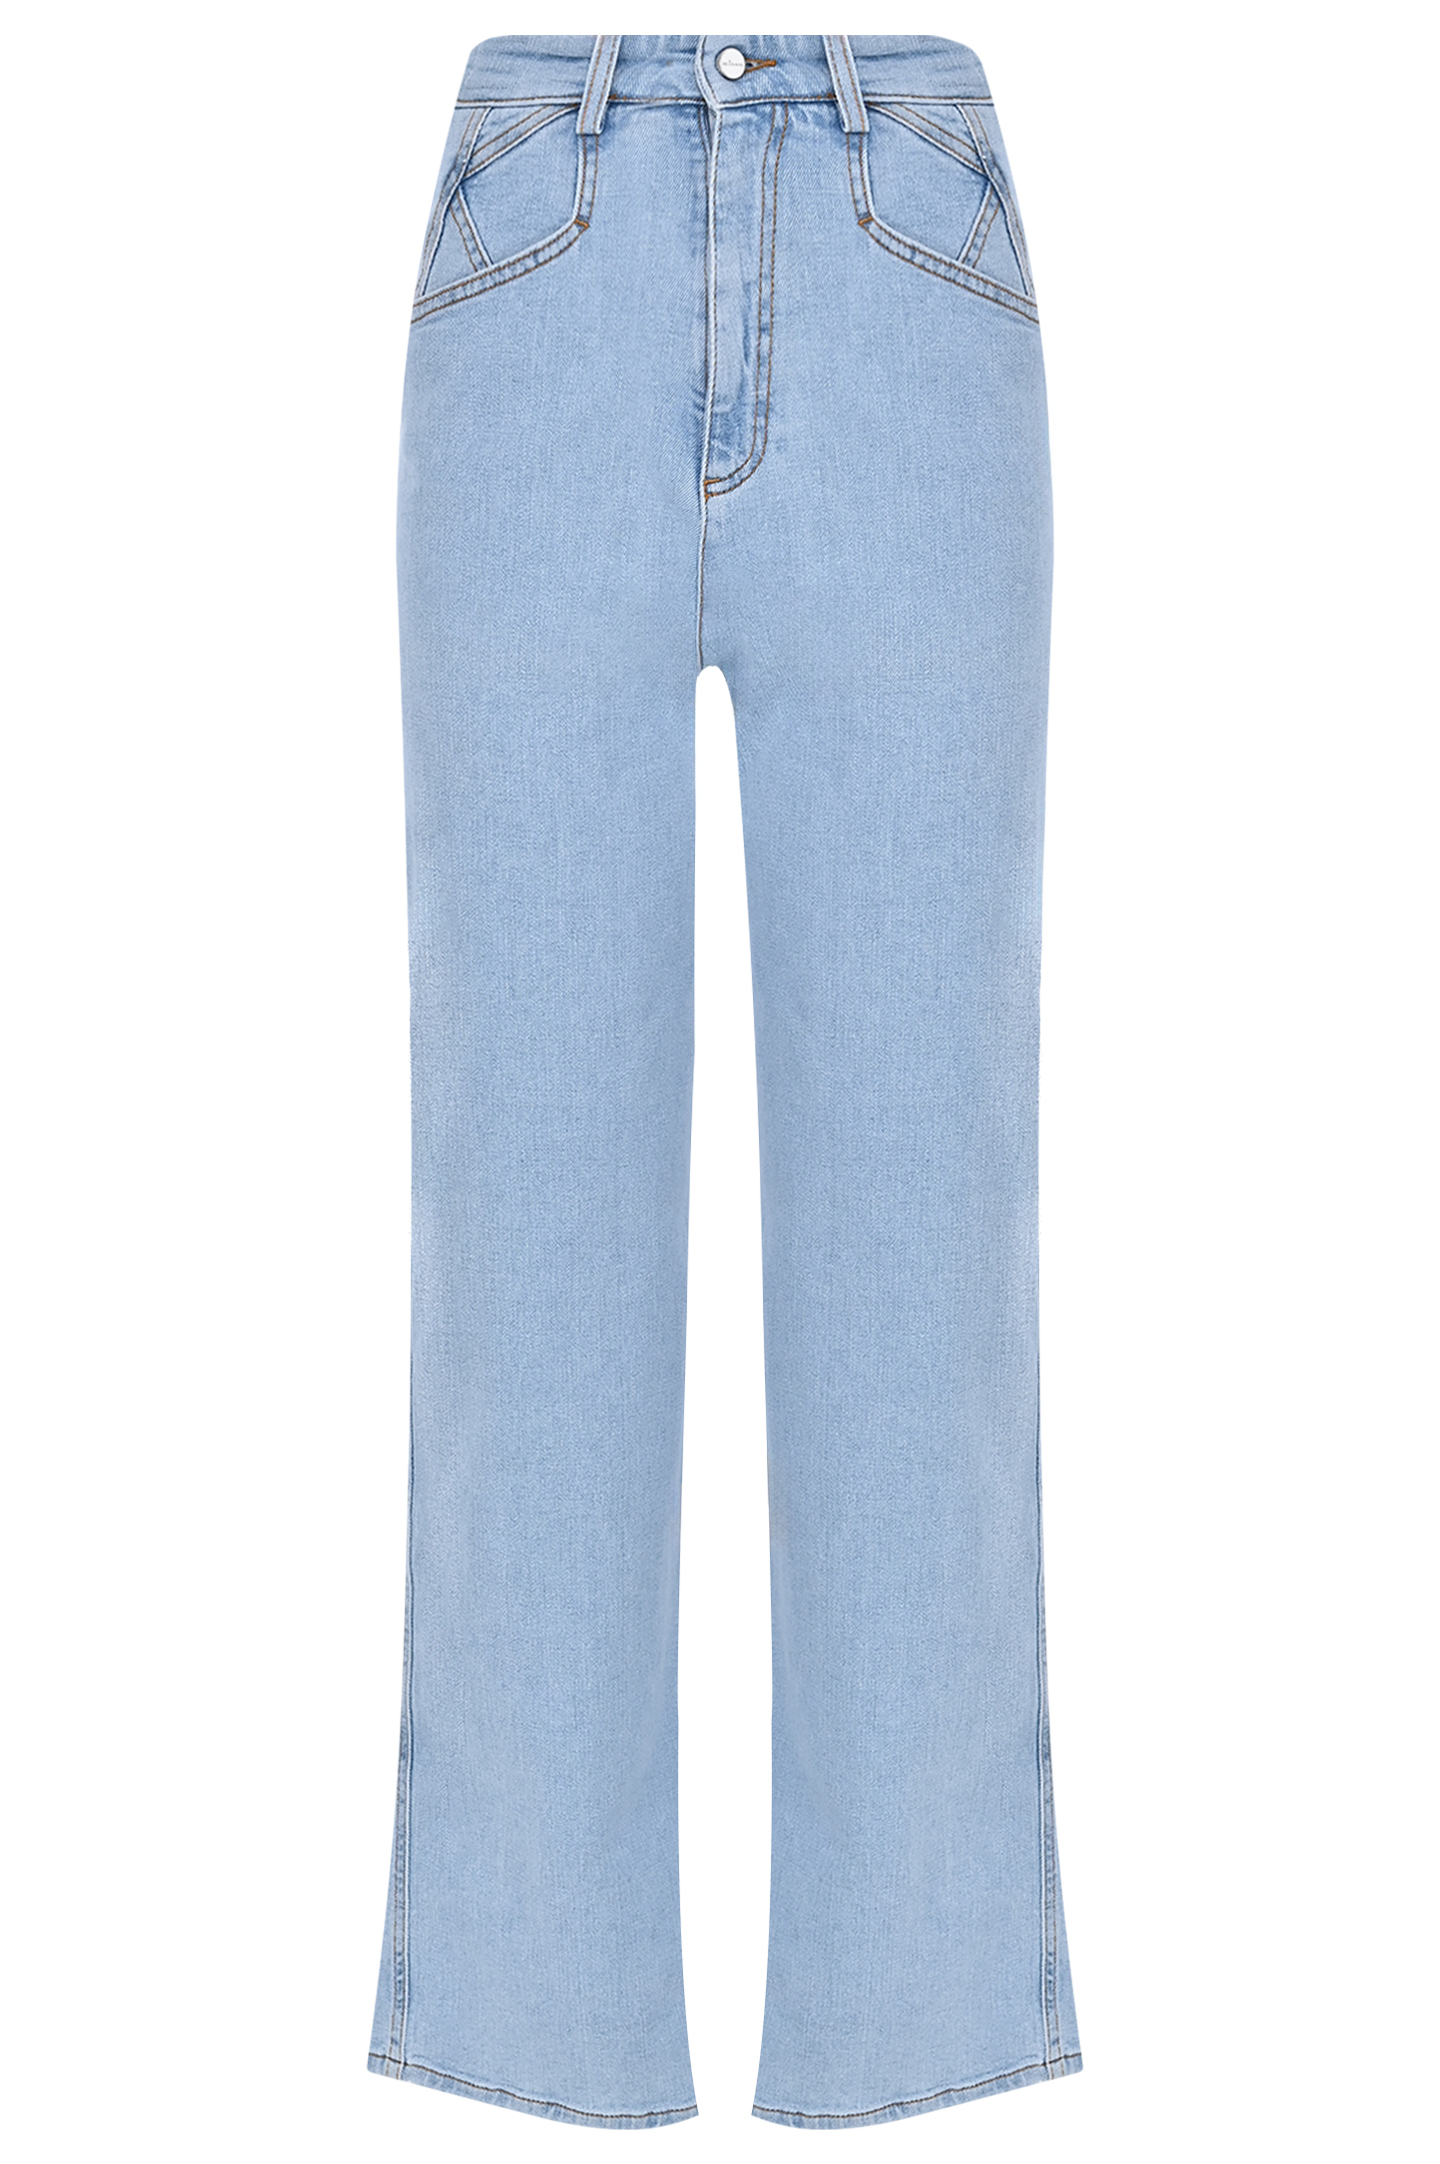 Широкие джинсы из хлопка и эластана KITON DJ53102K0900D0, цвет: Голубой, Женский